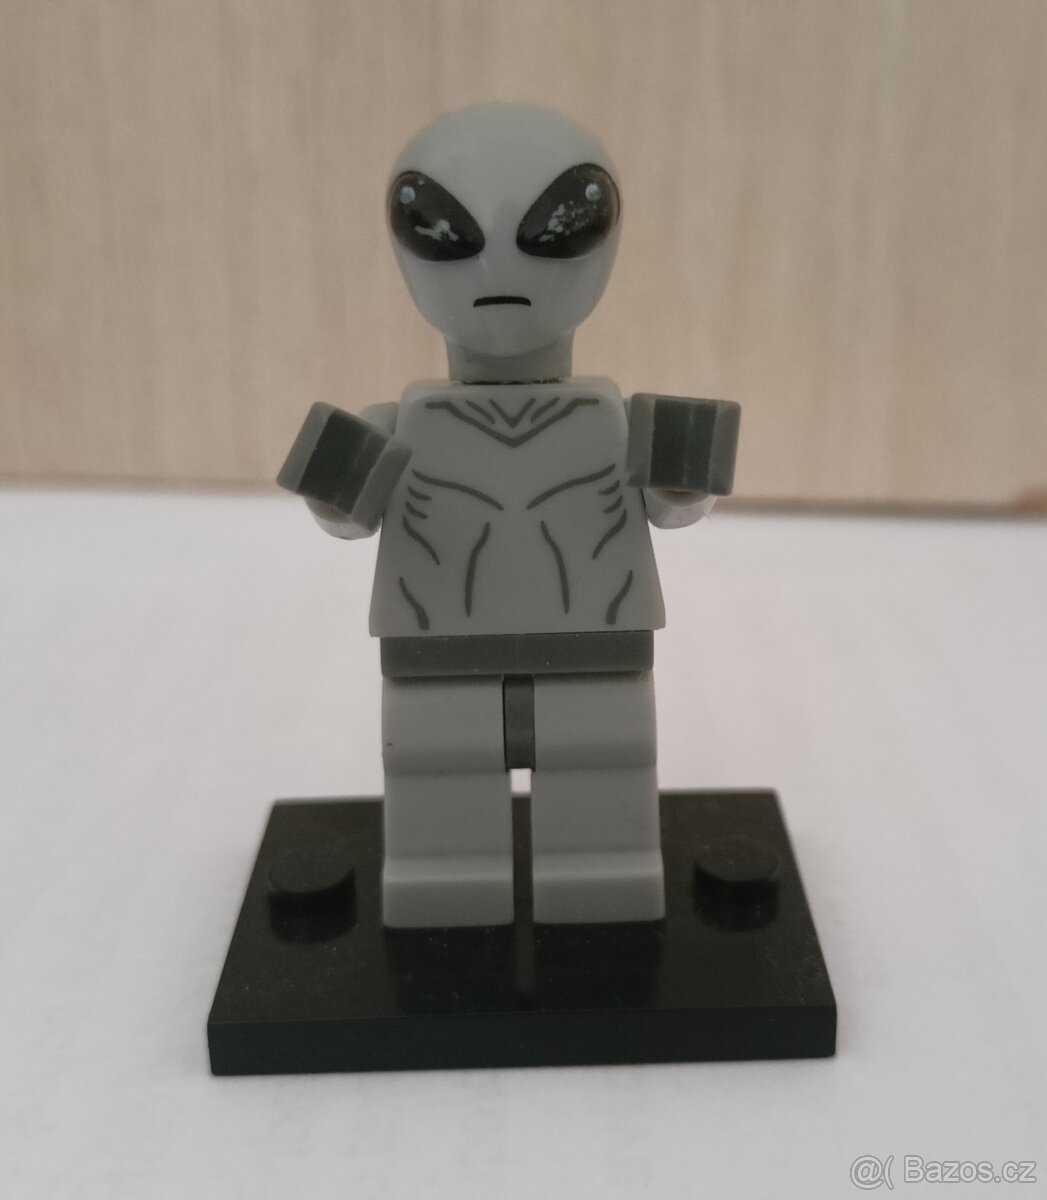 Lego figurka Classic Alien ze 6. Série minifigures